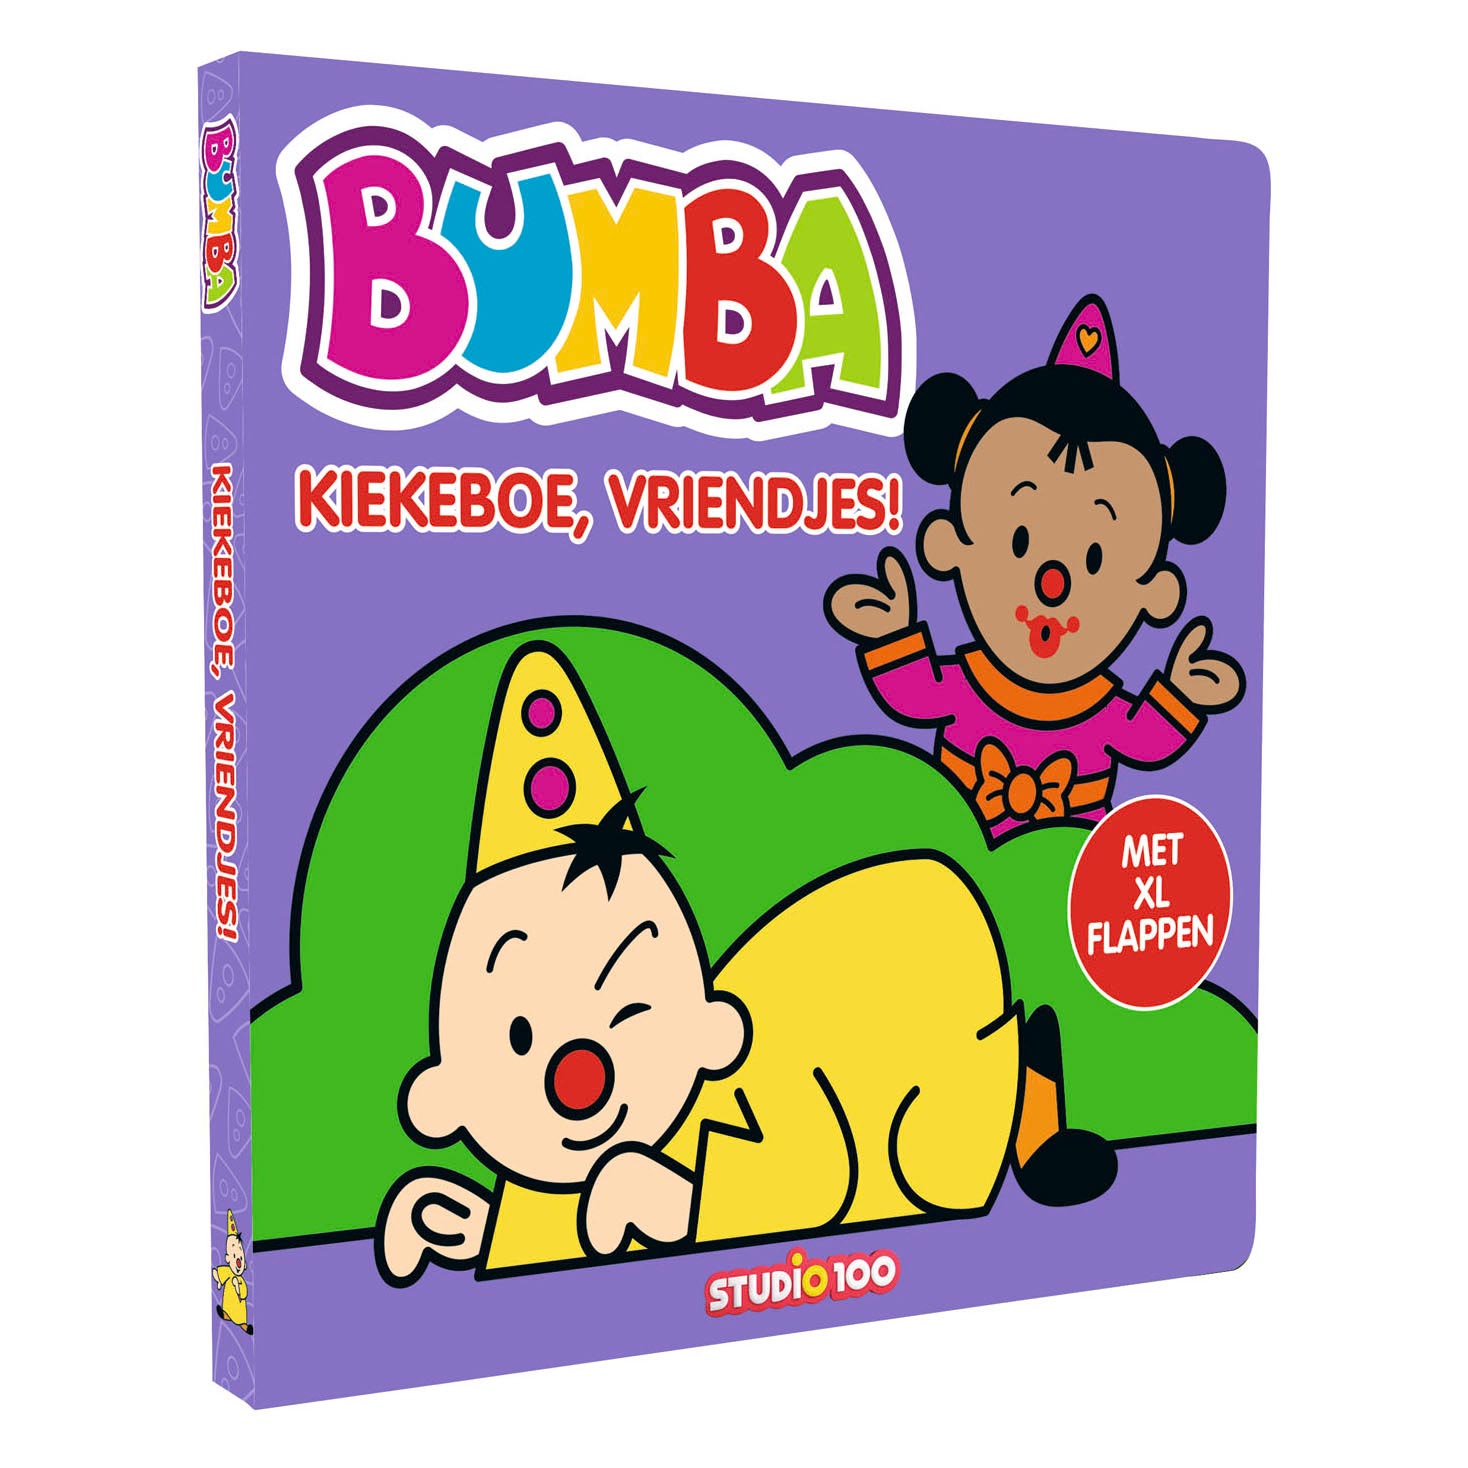 Bumba Kartonbuch – Guck-Guck-Freunde!